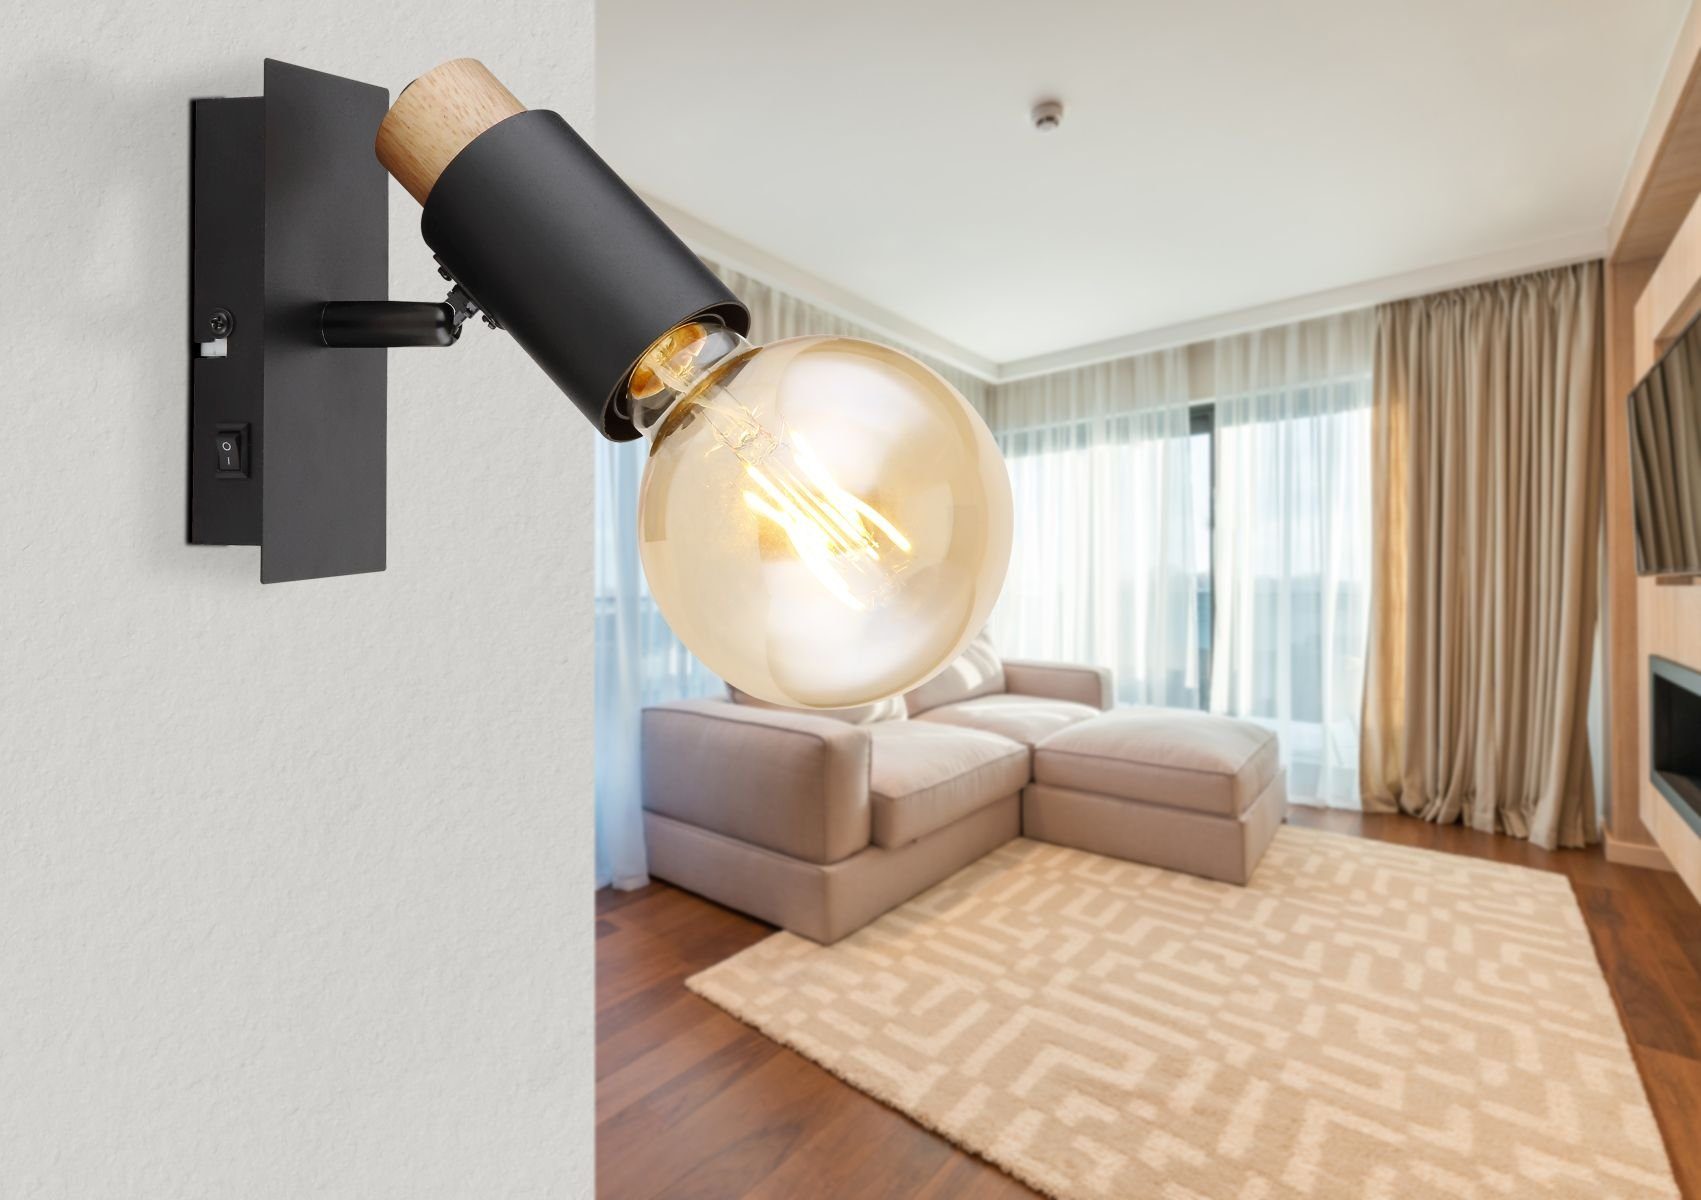 Wandleuchte mit Globo Wandleuchte GLOBO Wandlampe Innen Wohnzimmer Schalter